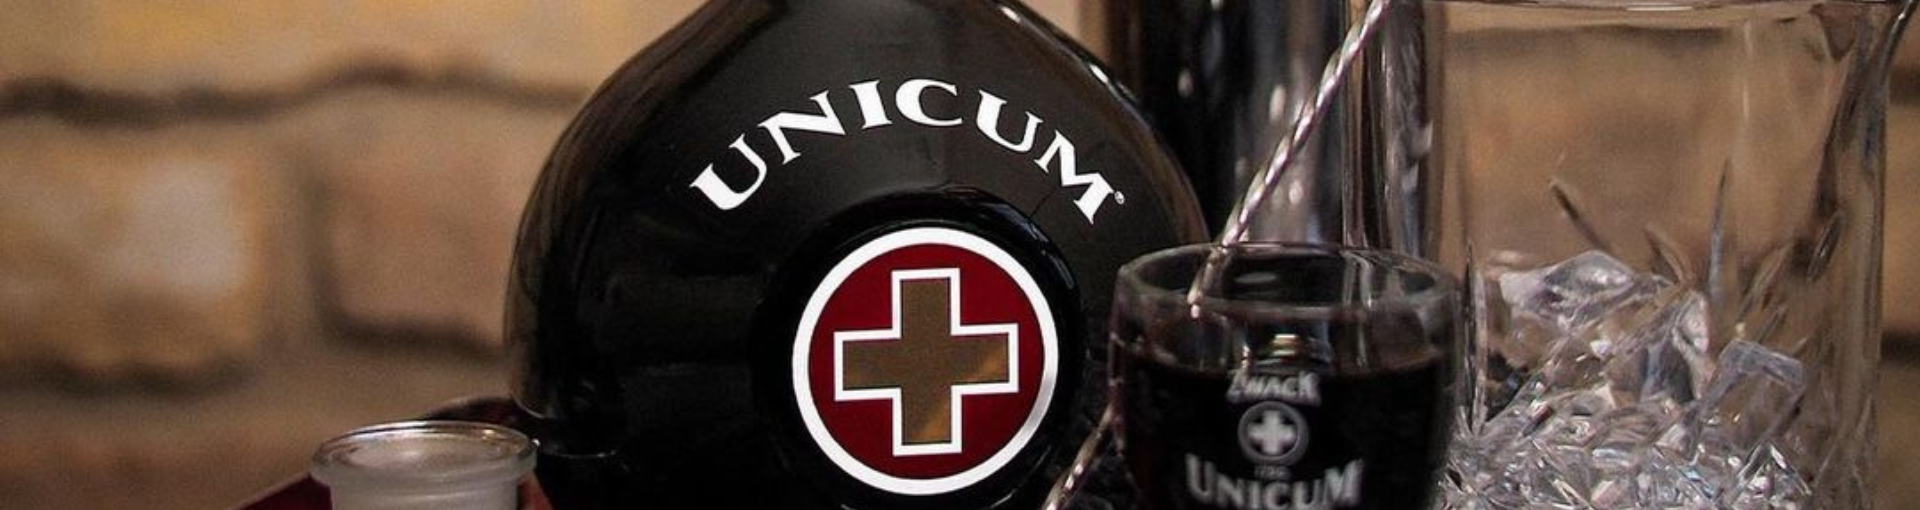 Eine Flasche Zwack Unicum mit einem Shotglas, einem Cocktailglas, einem Rührlöffel und einem Cocktailshaker auf einem Tablett